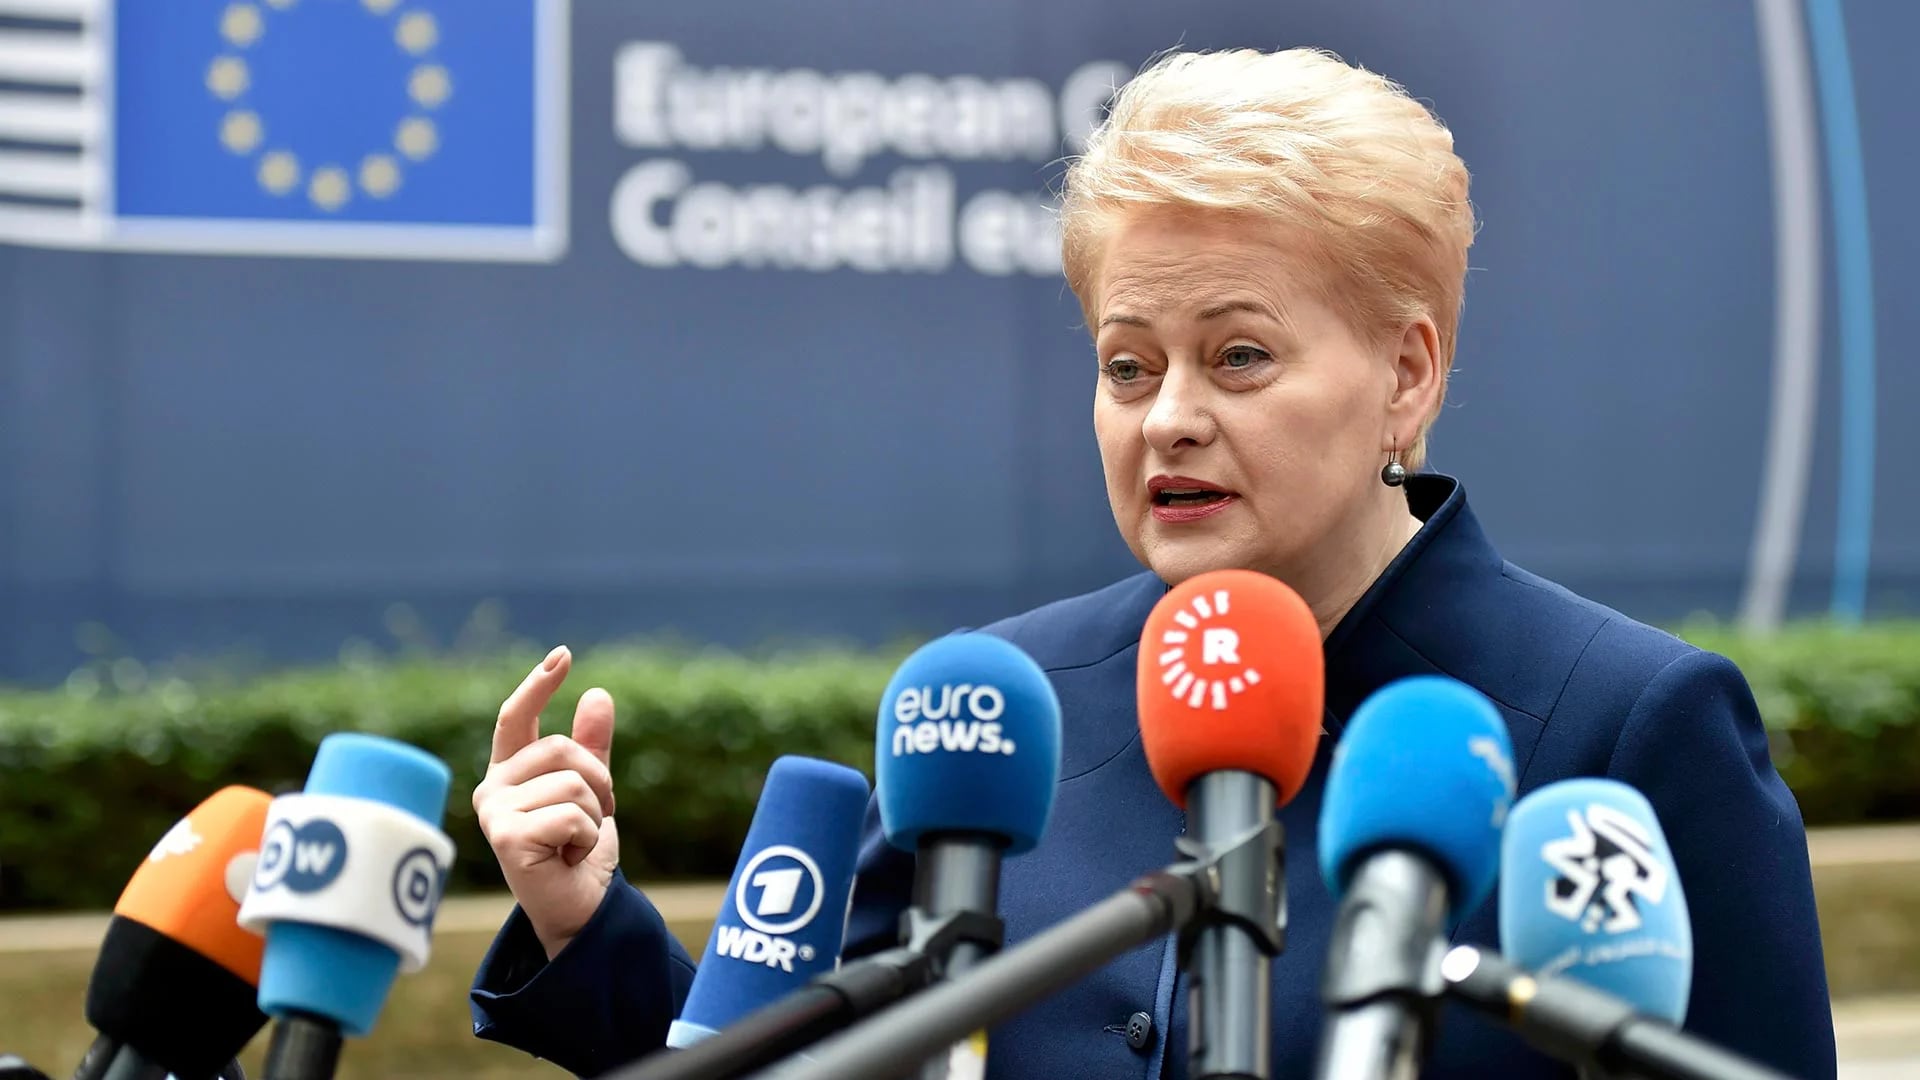 5- Lituania también tiene una presidente mujer: Dalia Grybauskaite